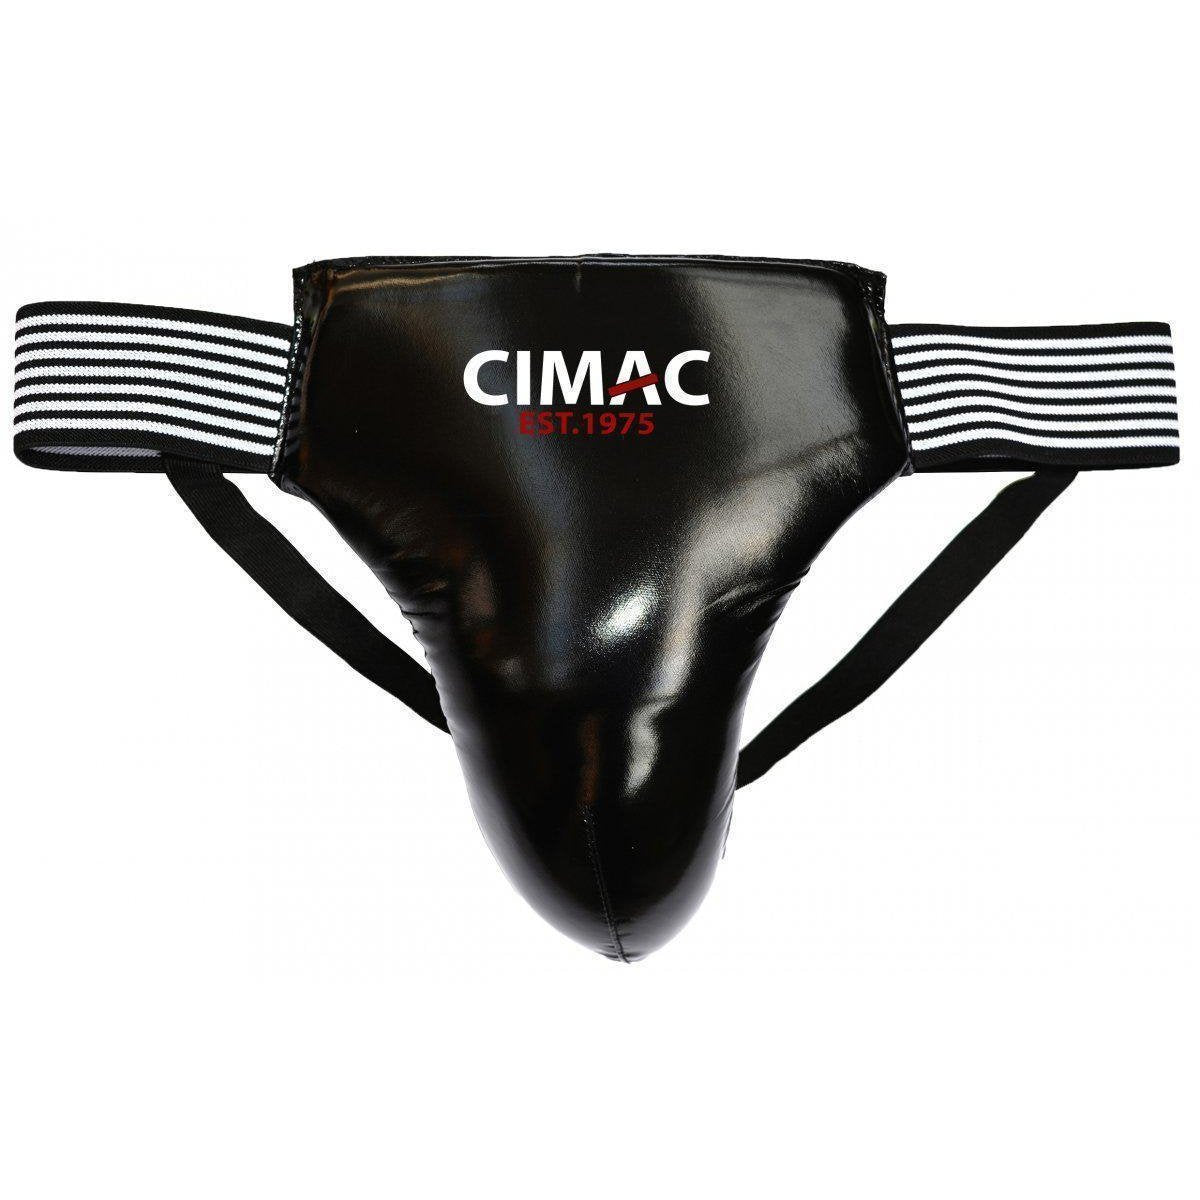 Cimac Mens Martial Arts Groin Guard Cup Protector